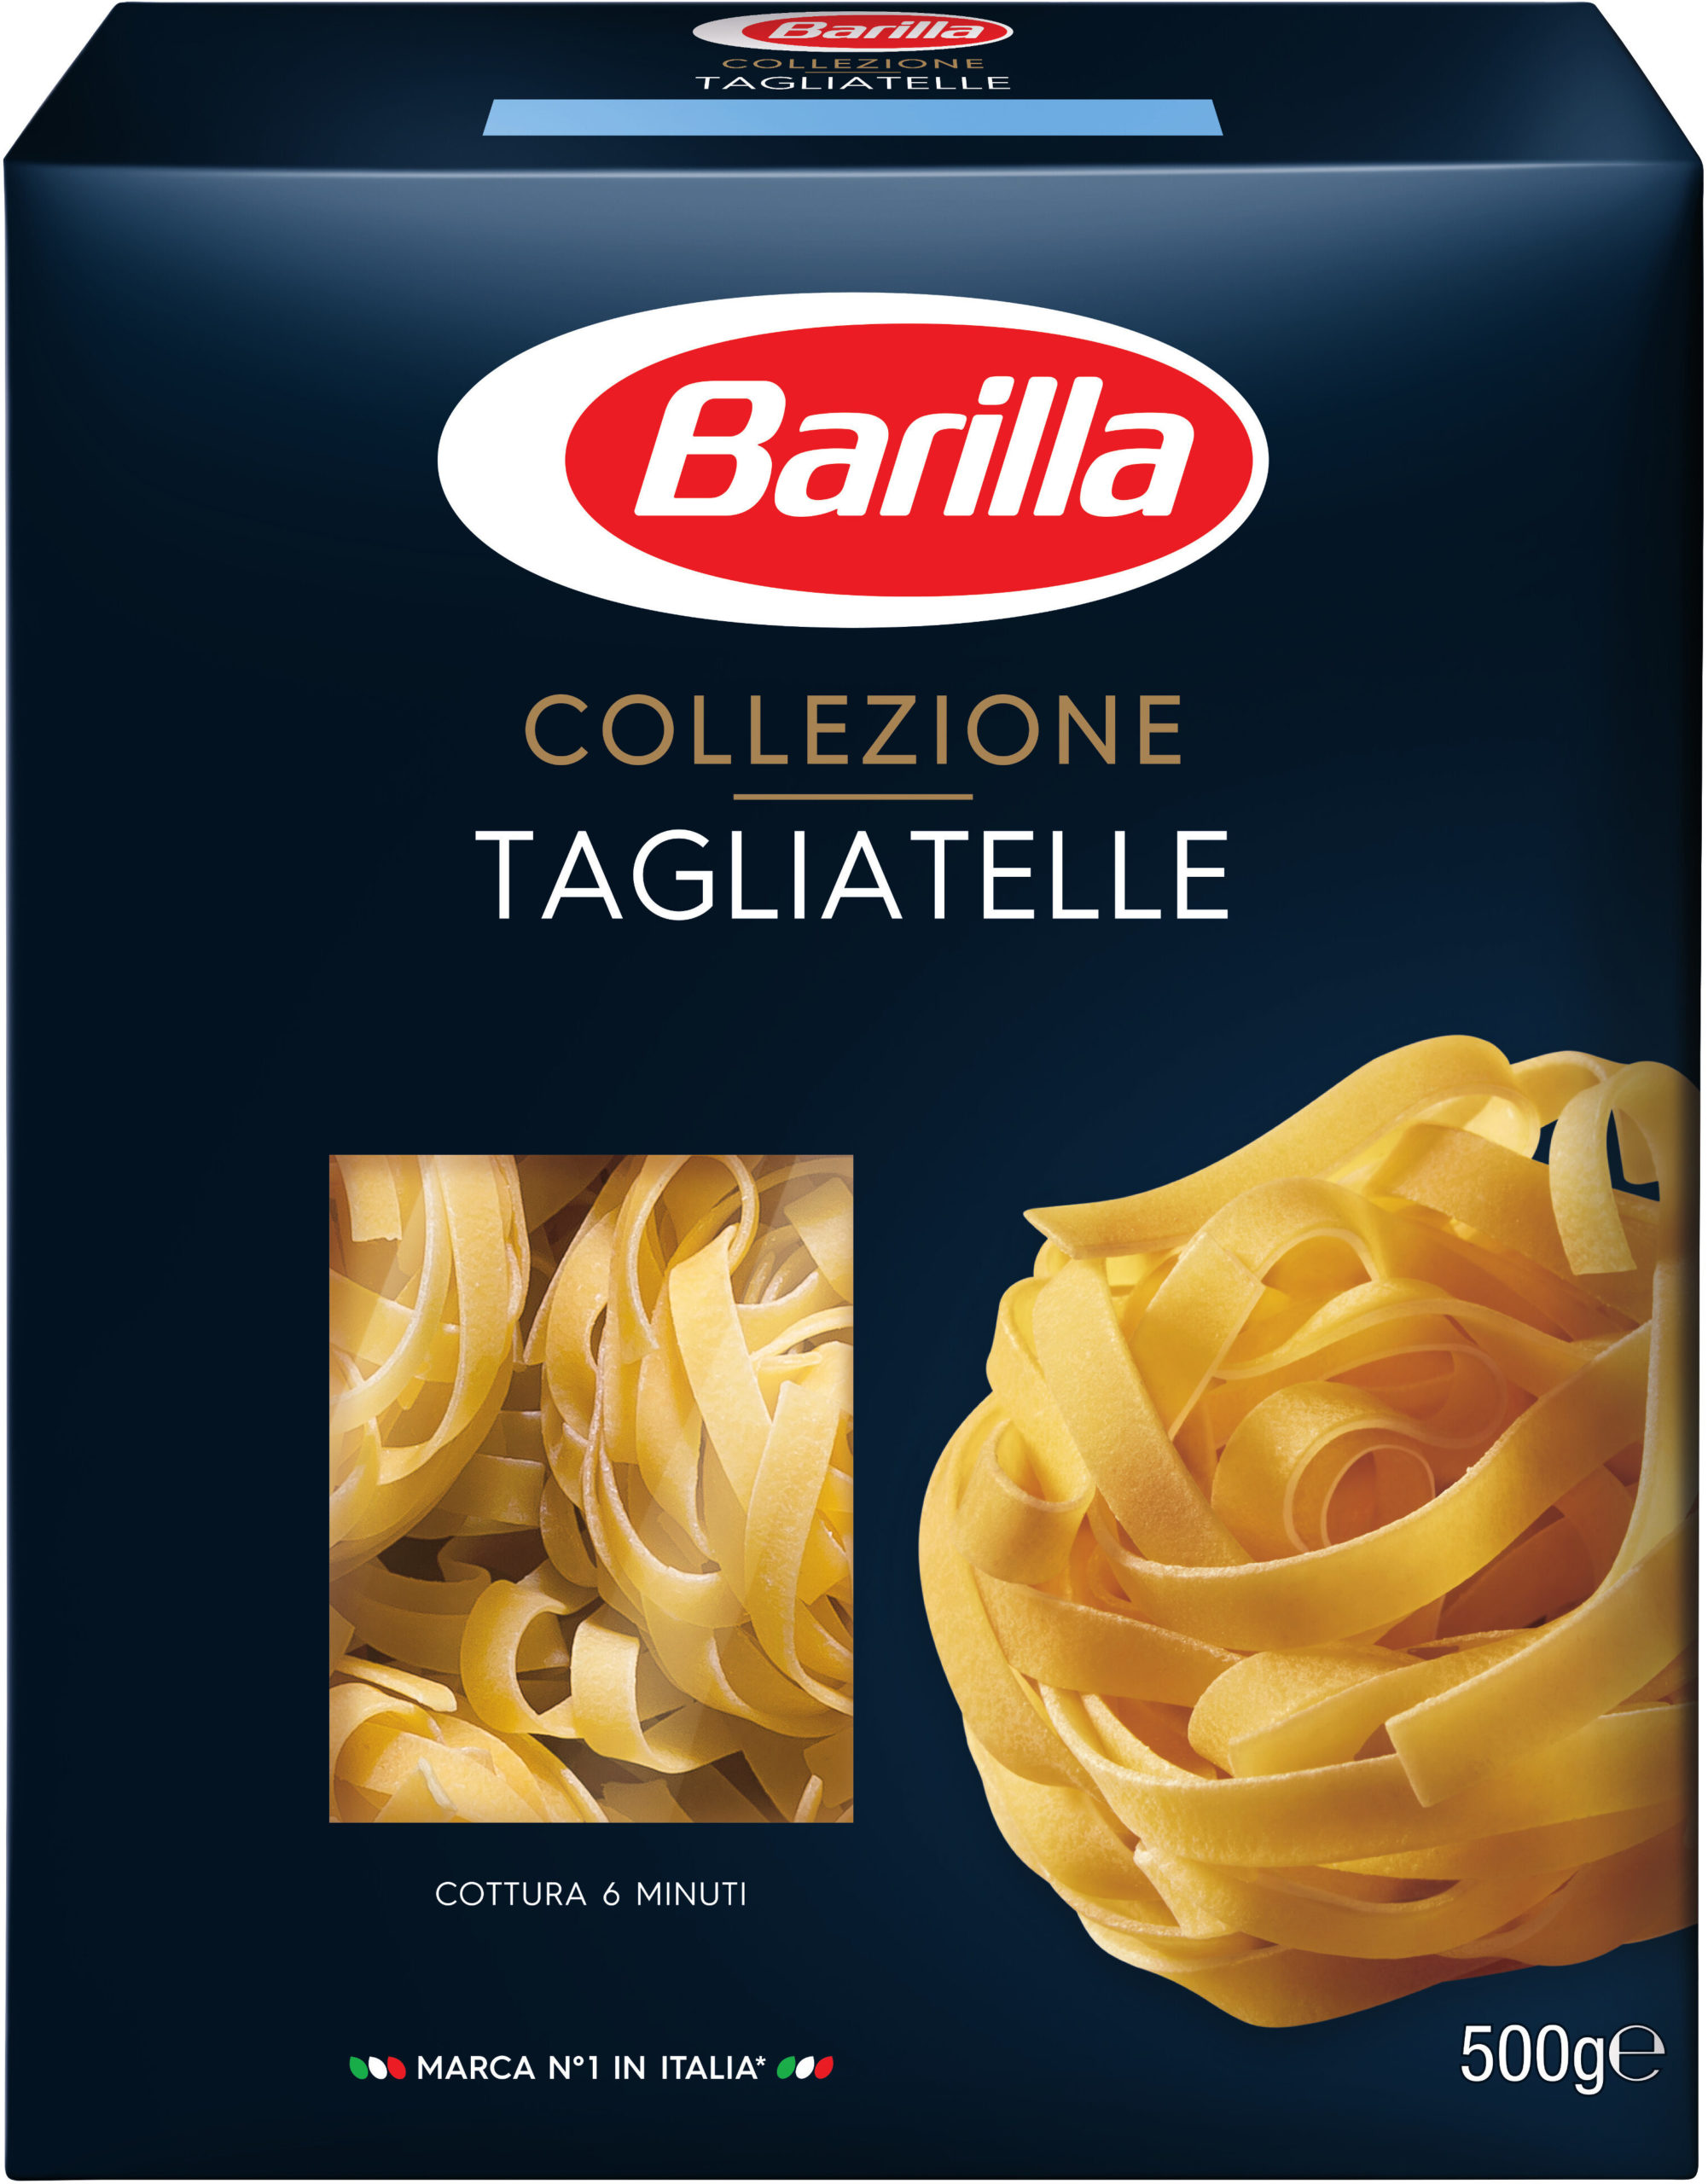 Pasta Barilla Tagliatelle - Samos Deli Ibiza